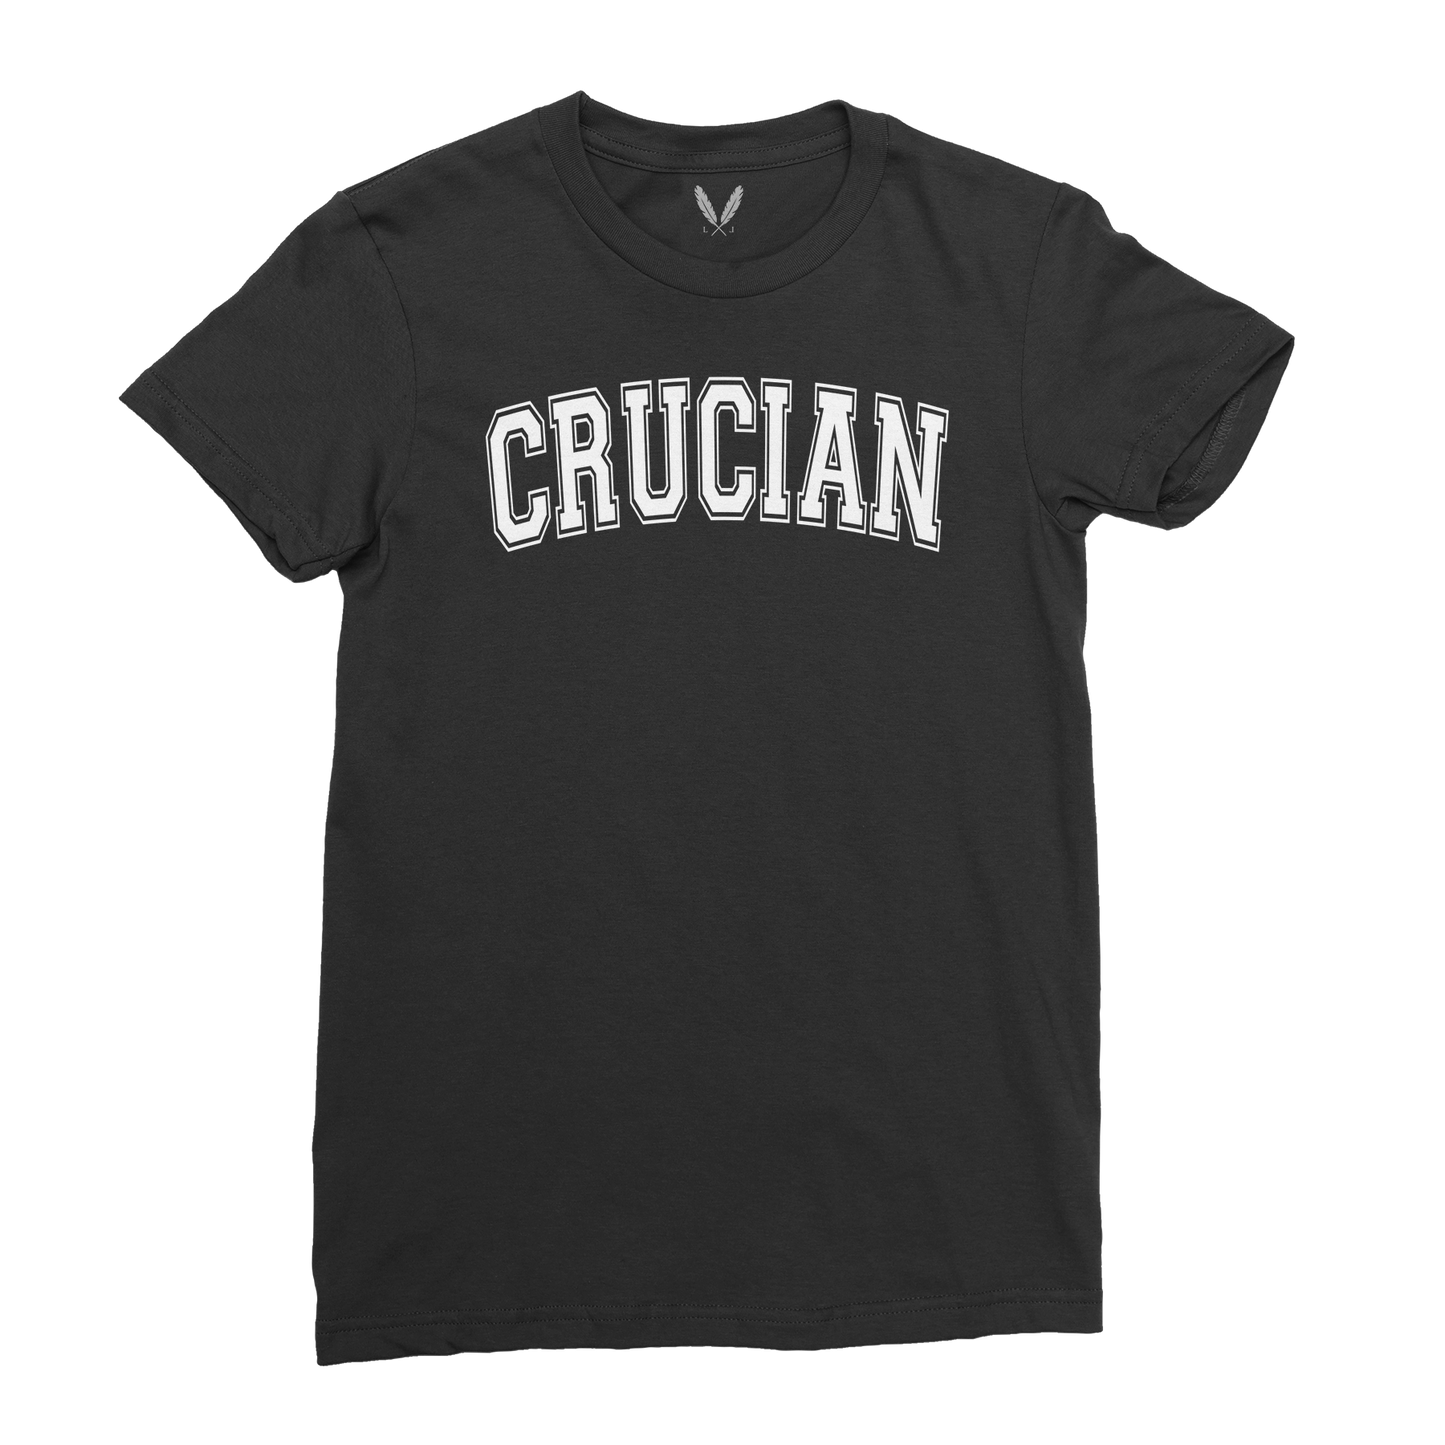 Crucian Varsity Logo (W) - Black and White